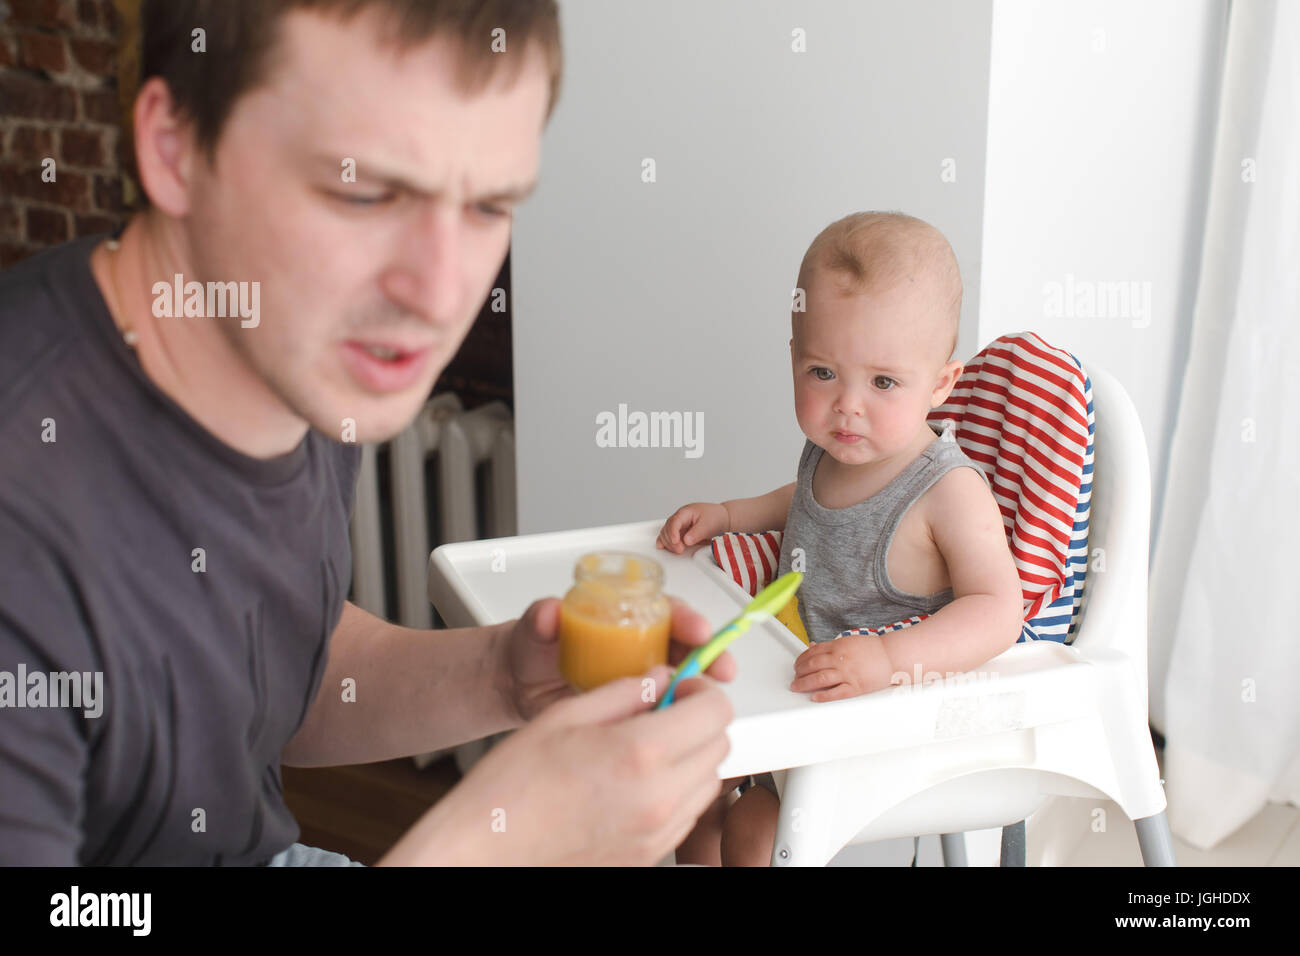 Father feeding infant son Stock Photo